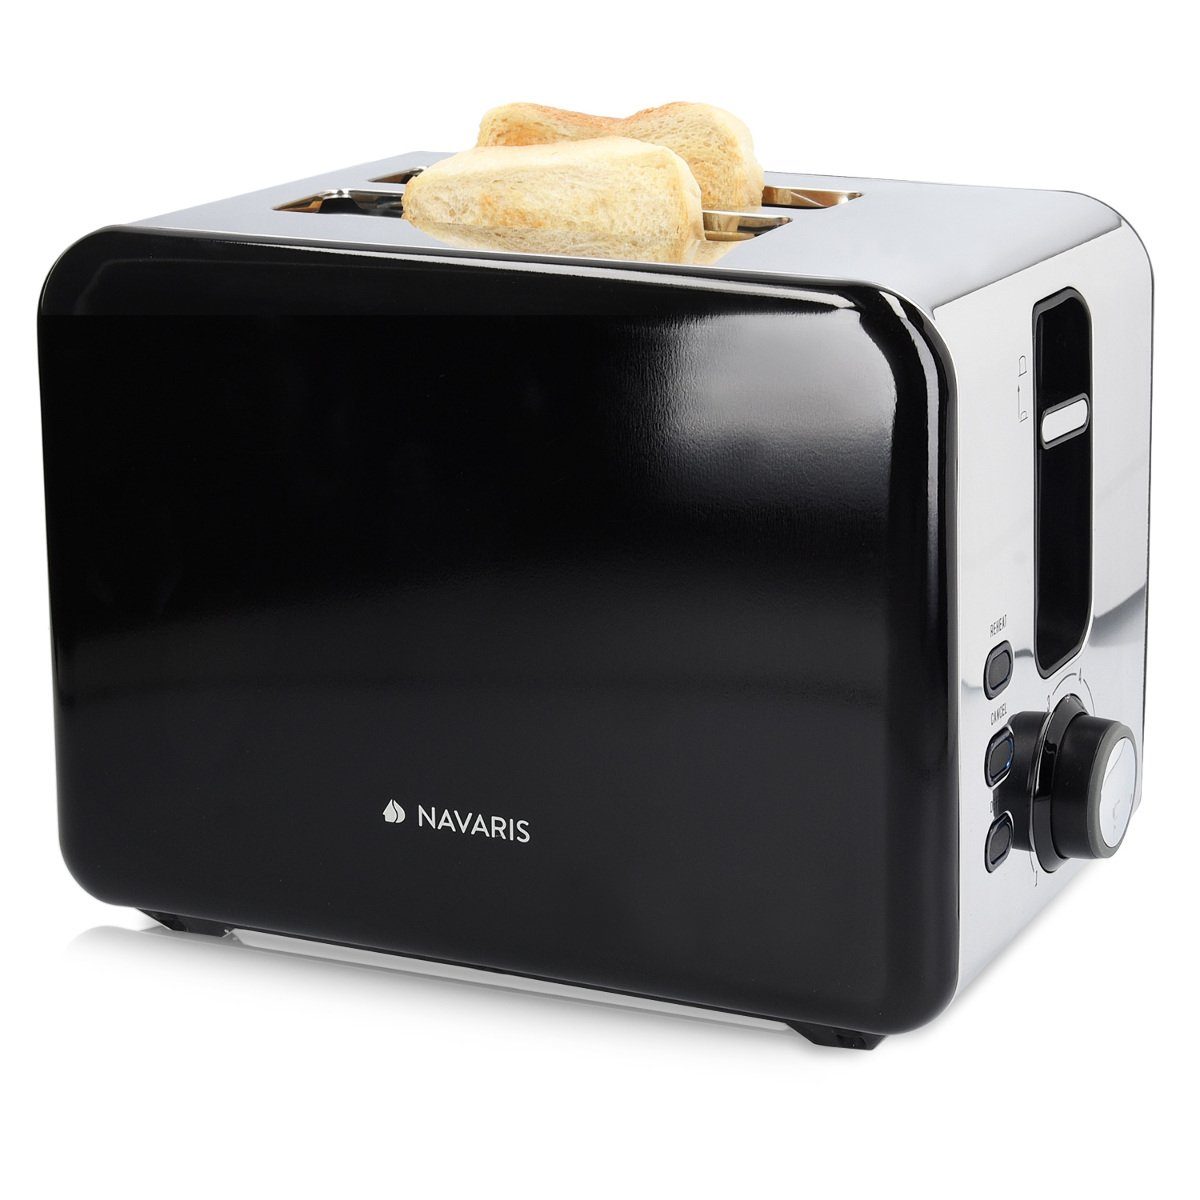 Edelstahl Doppelschlitz Toaster 2 extragroße Toast Schlitze 1000W 5 Stufen 